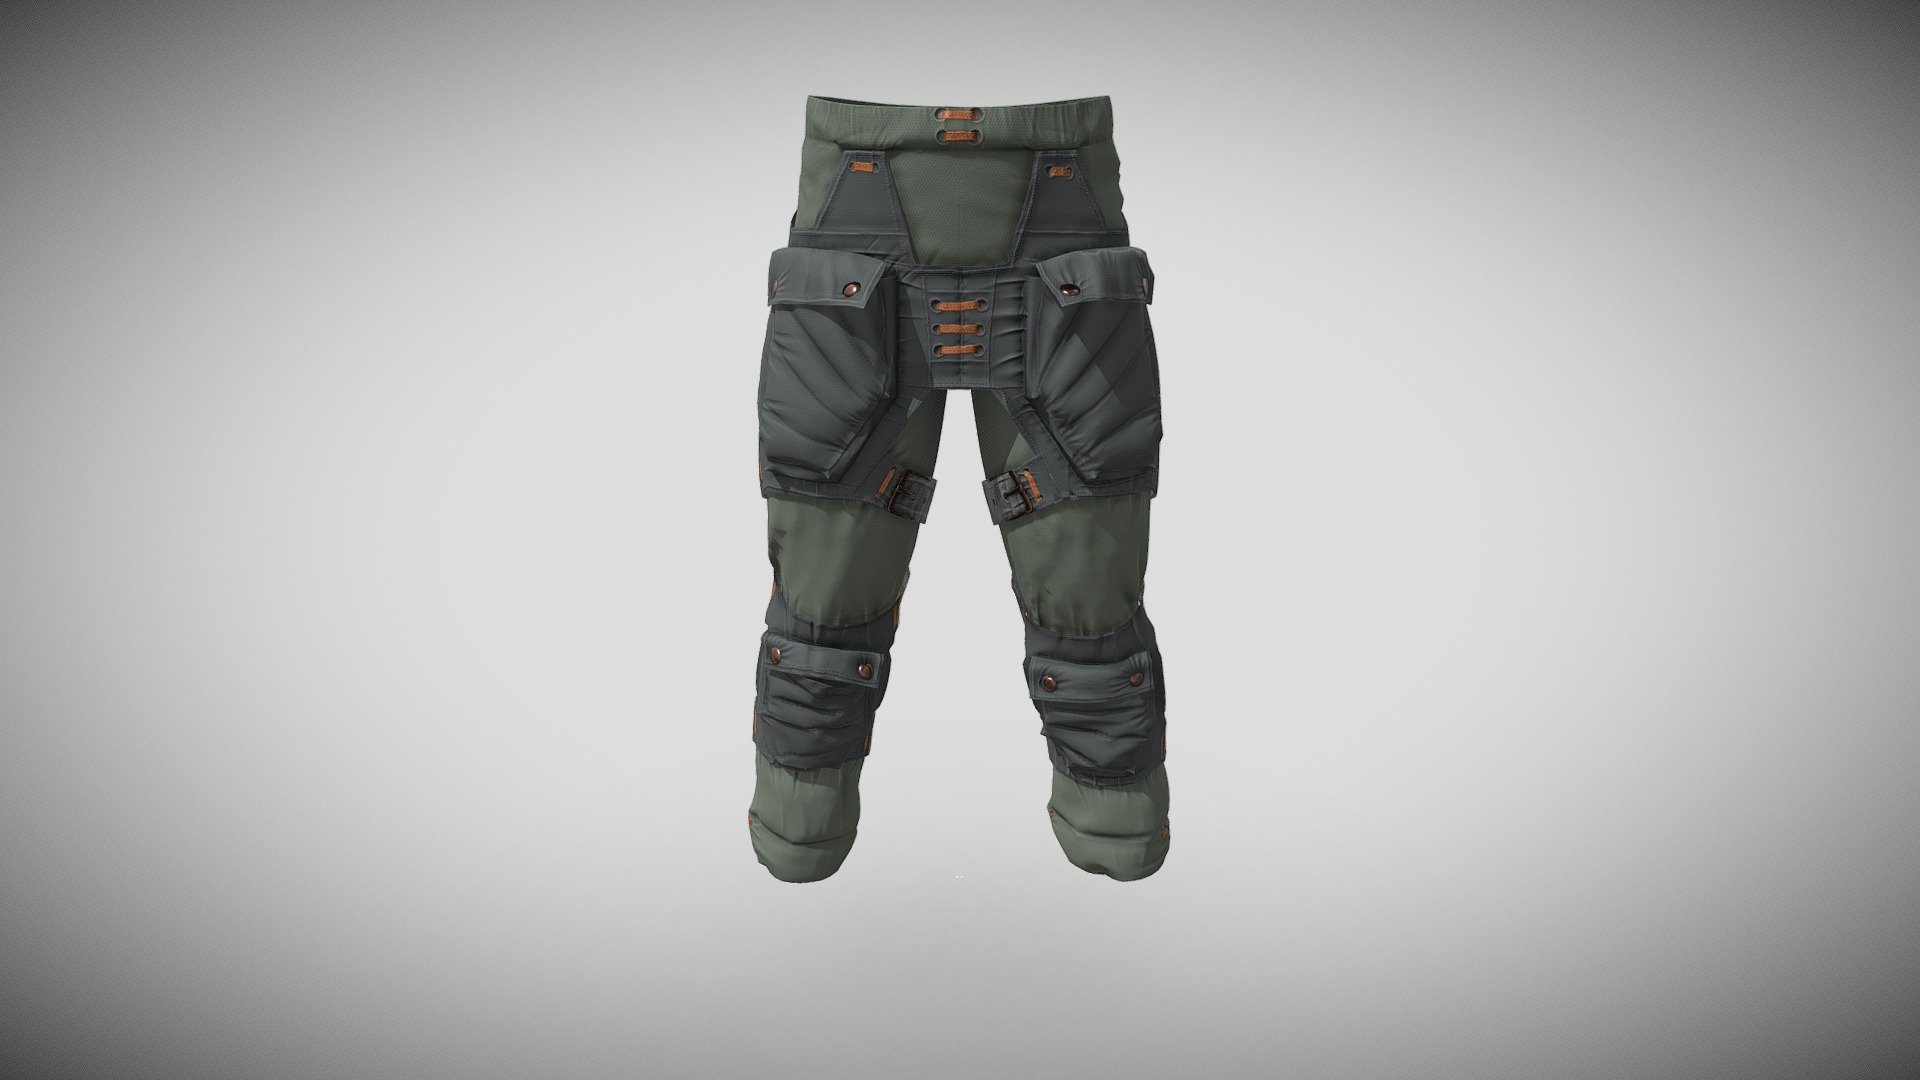 Kaaro techwear - Trousers 1 - Download Free 3D model by strangelet 3d model